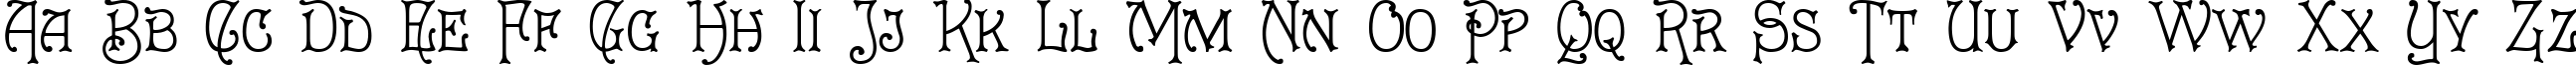 Пример написания английского алфавита шрифтом Cruickshank